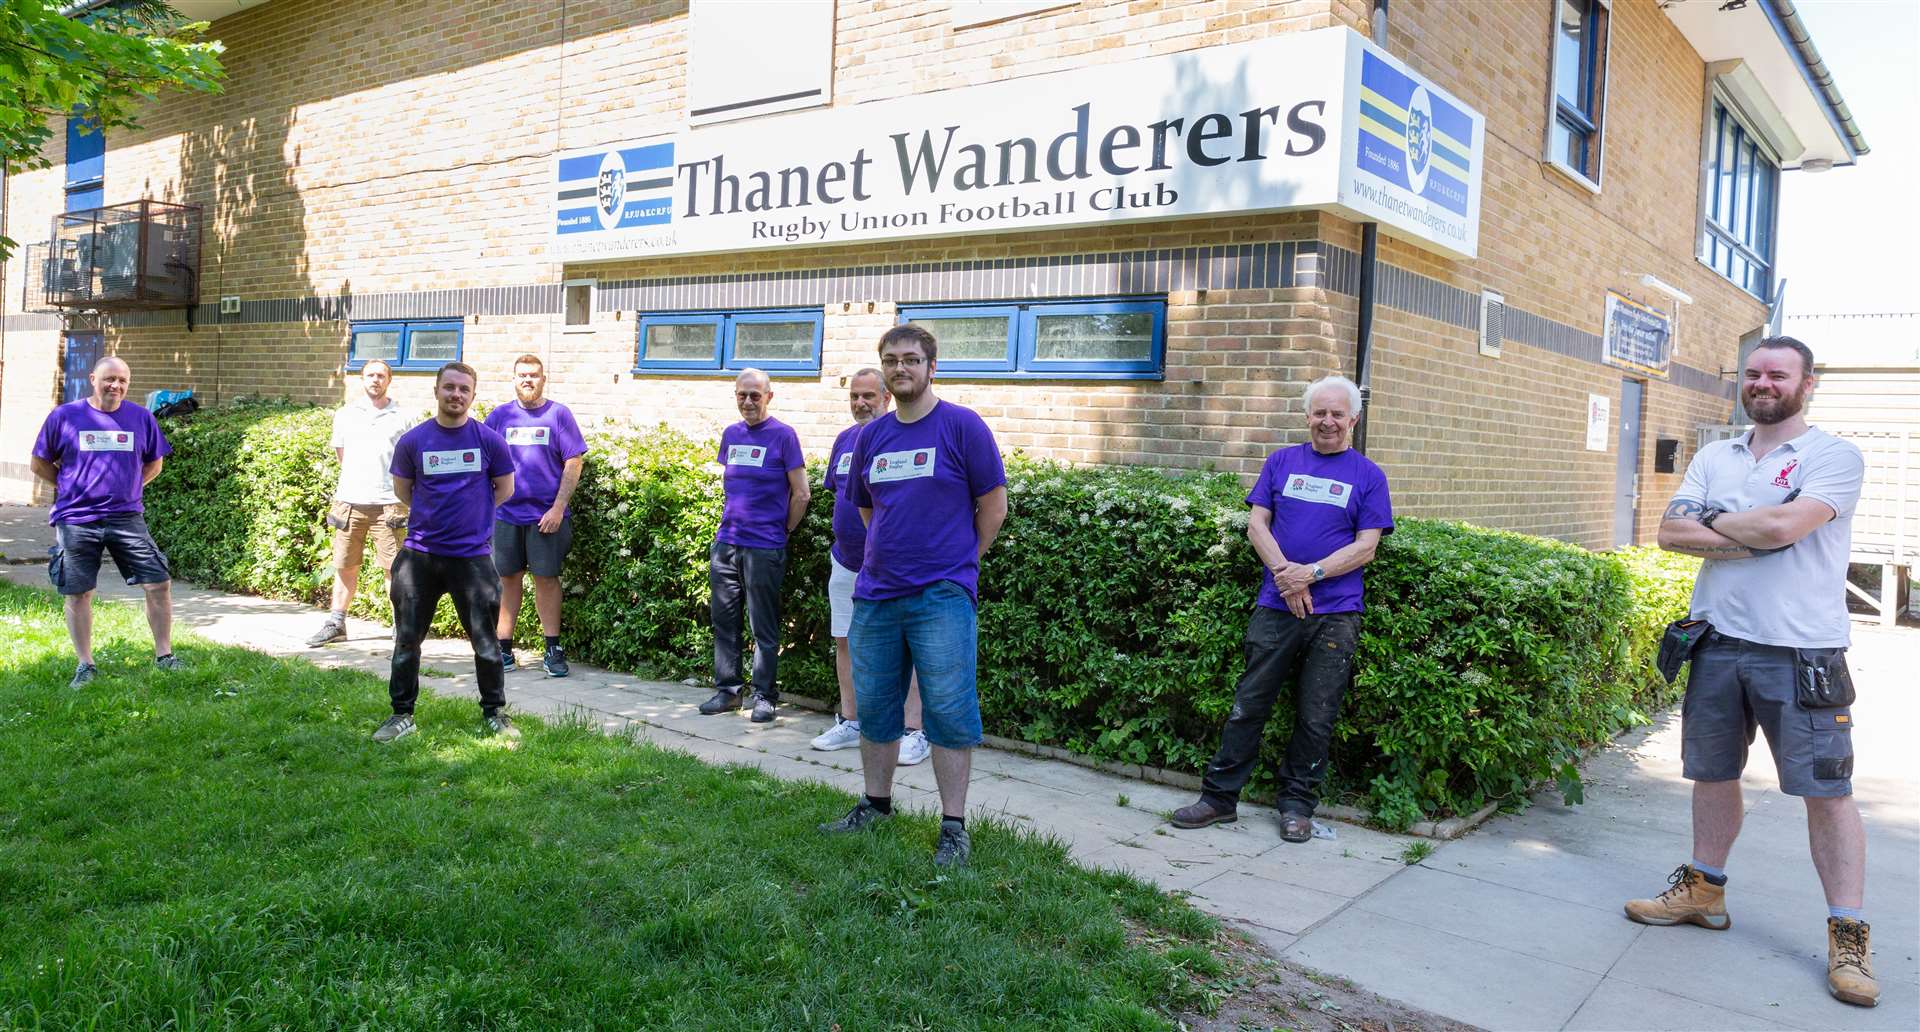 Volunteers at Thanet Wanderers RFC. (49147202)